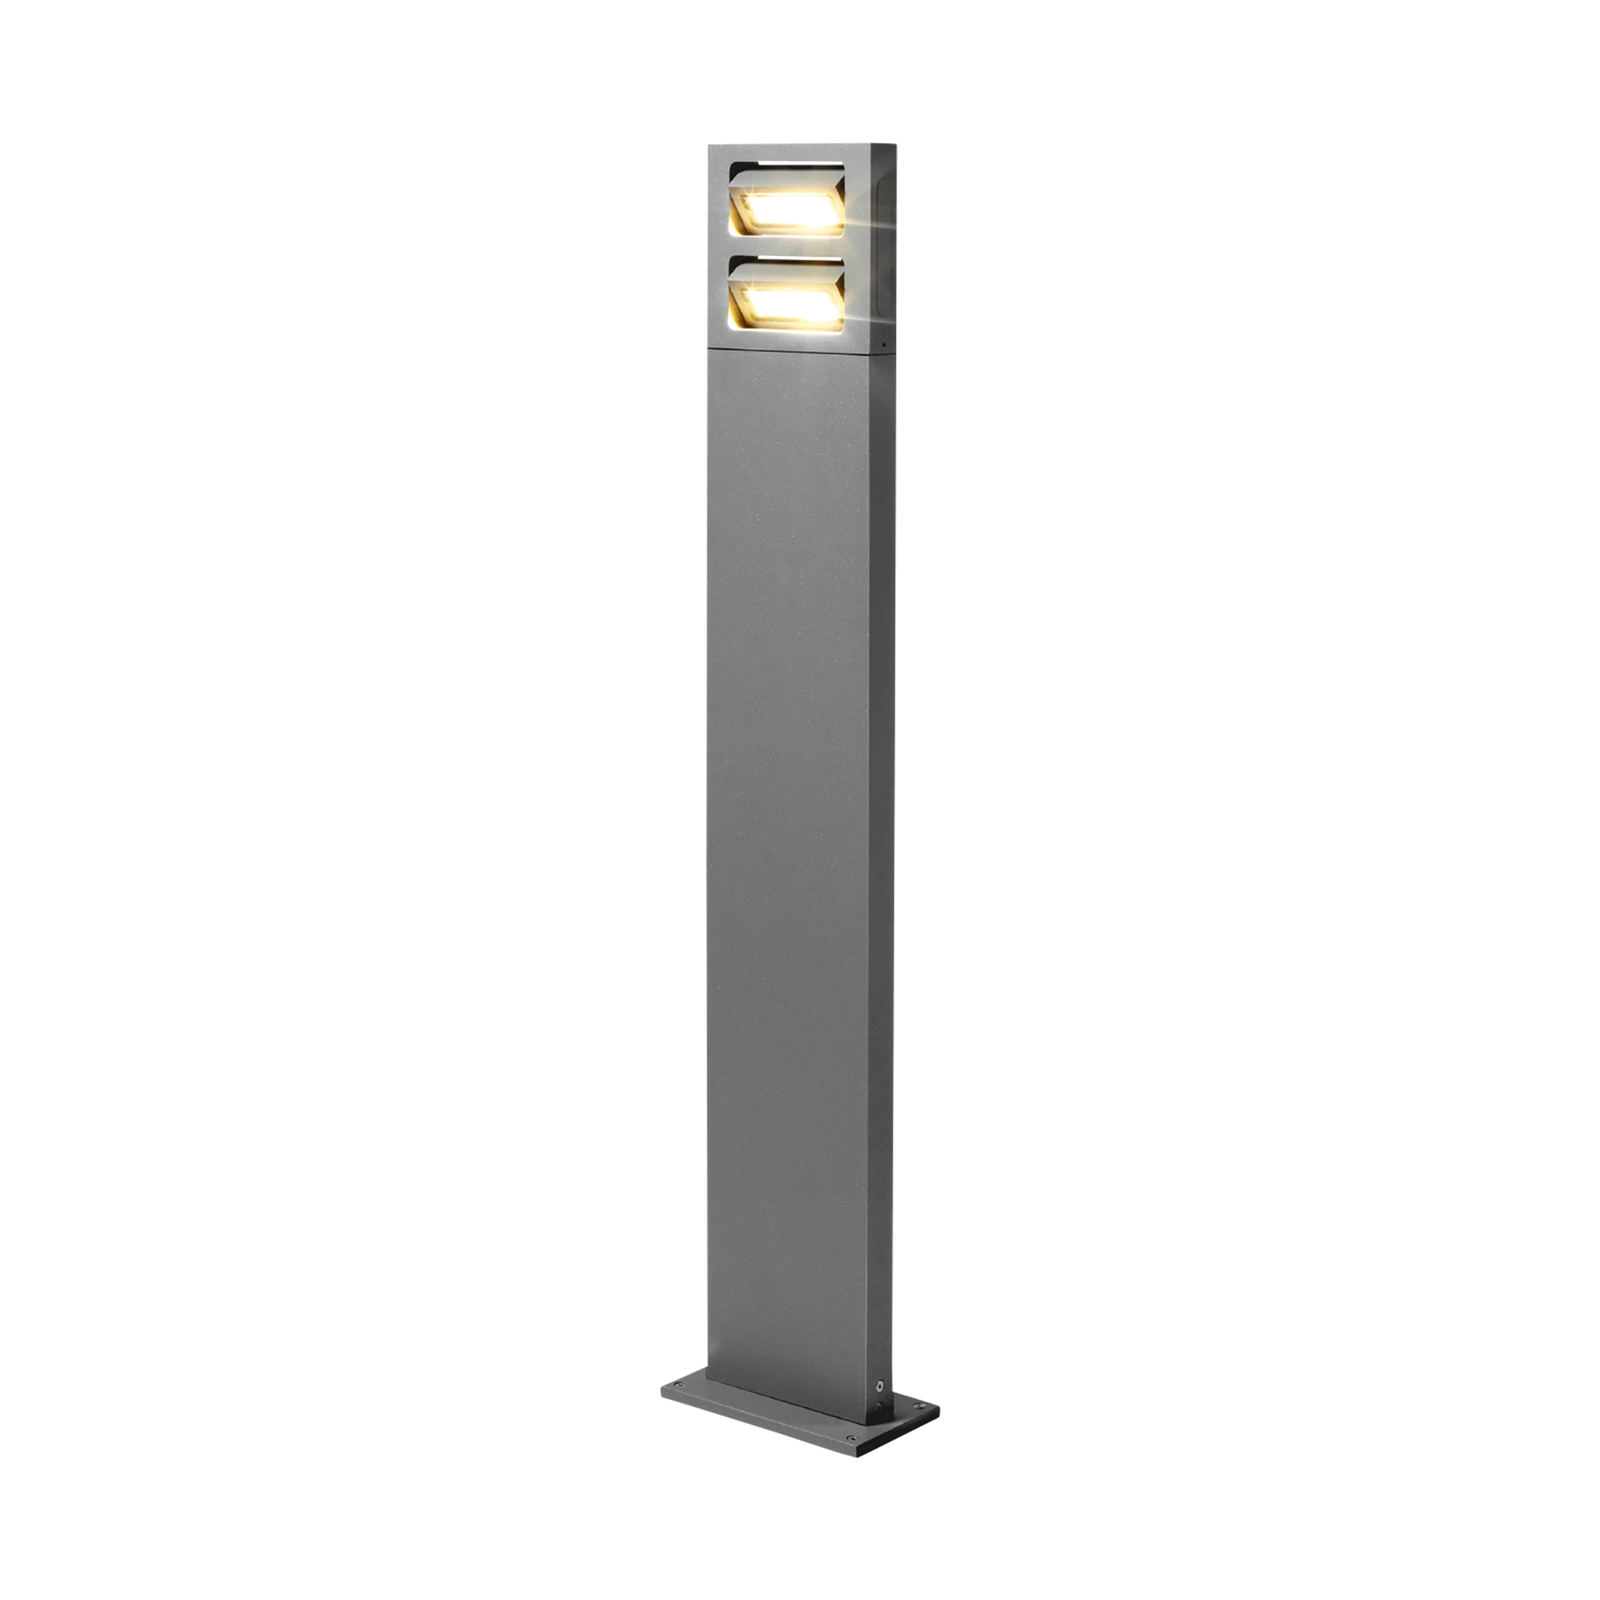 WEVER & DUCRÉ Sway 2.0 lampione LED altezza 60cm